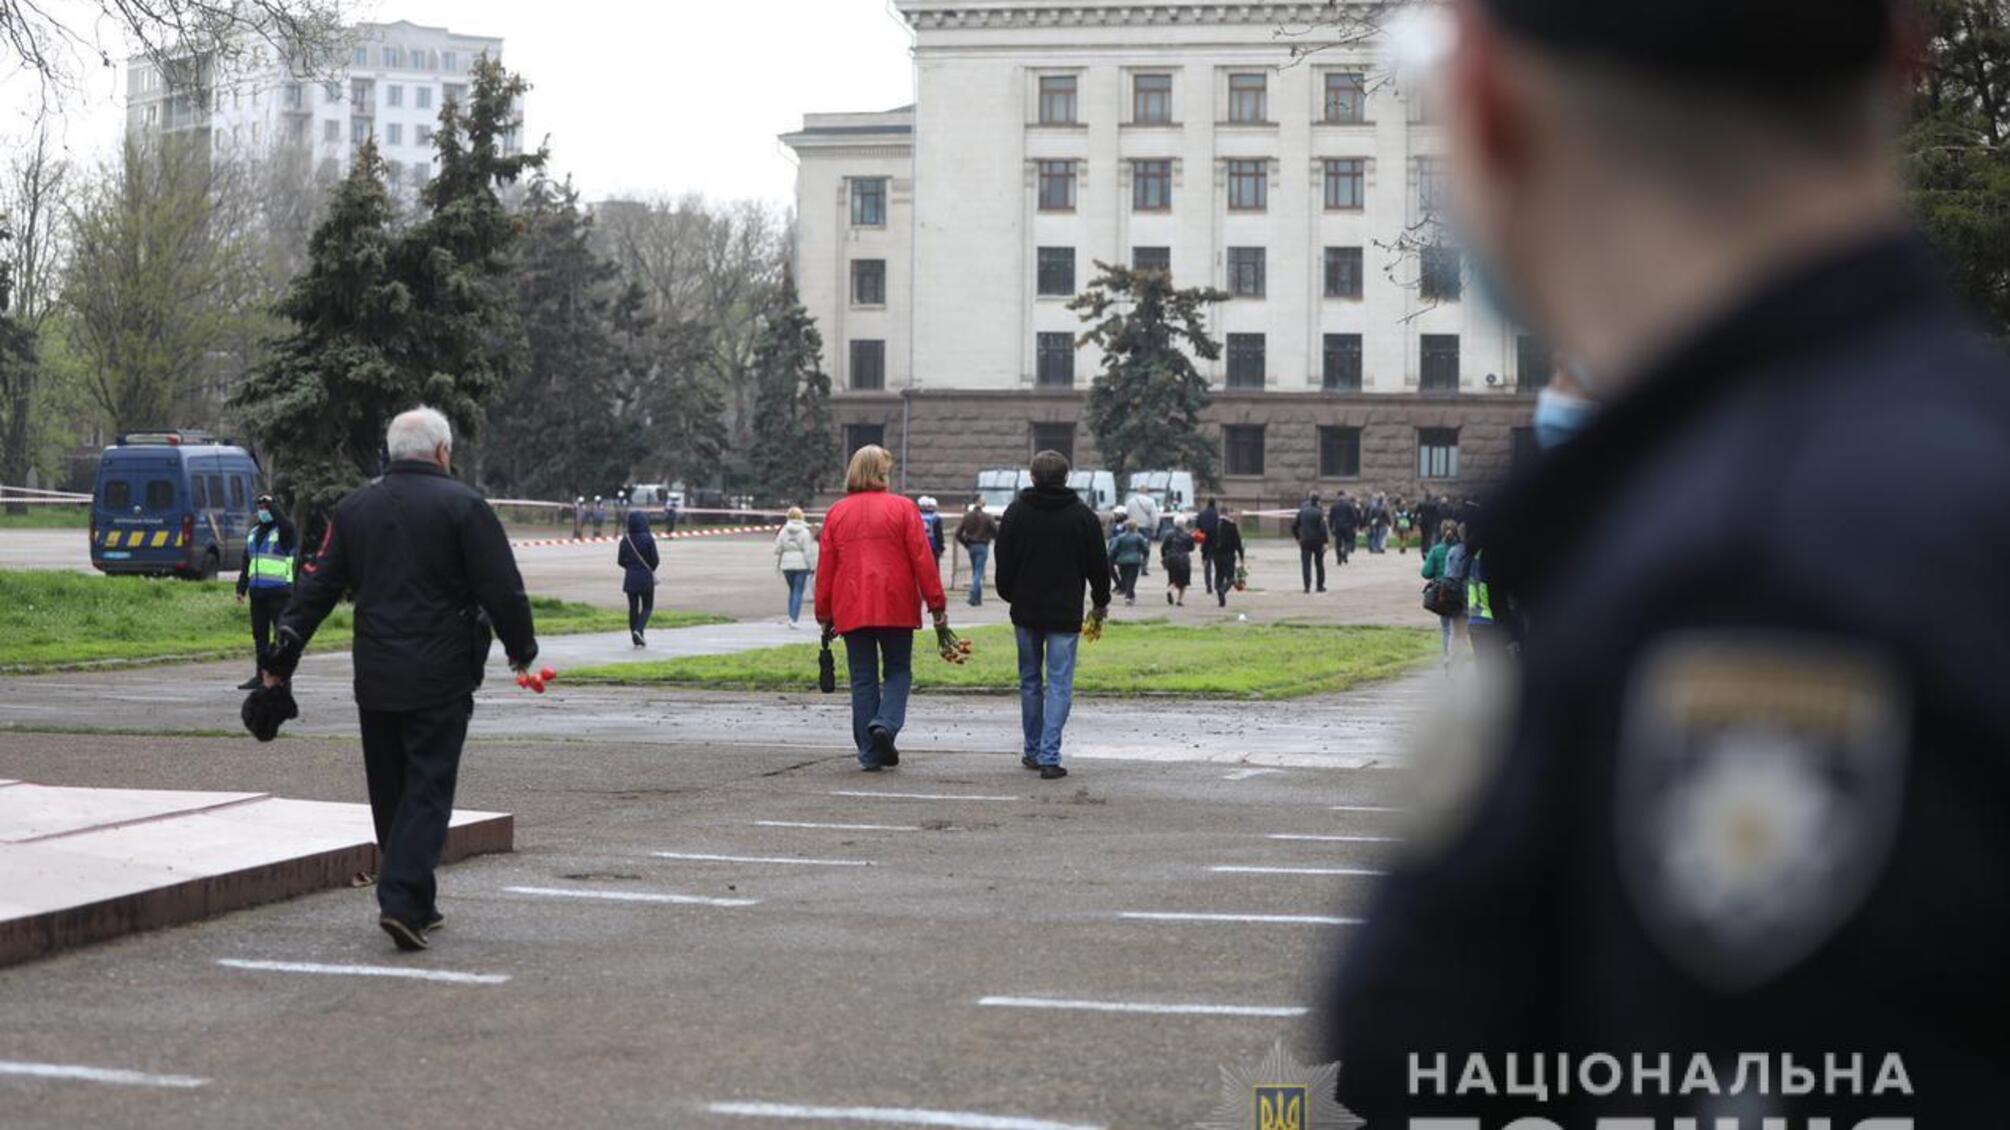 Сергій Яровий: Пам’ятні заходи в Одесі відбулися спокійно